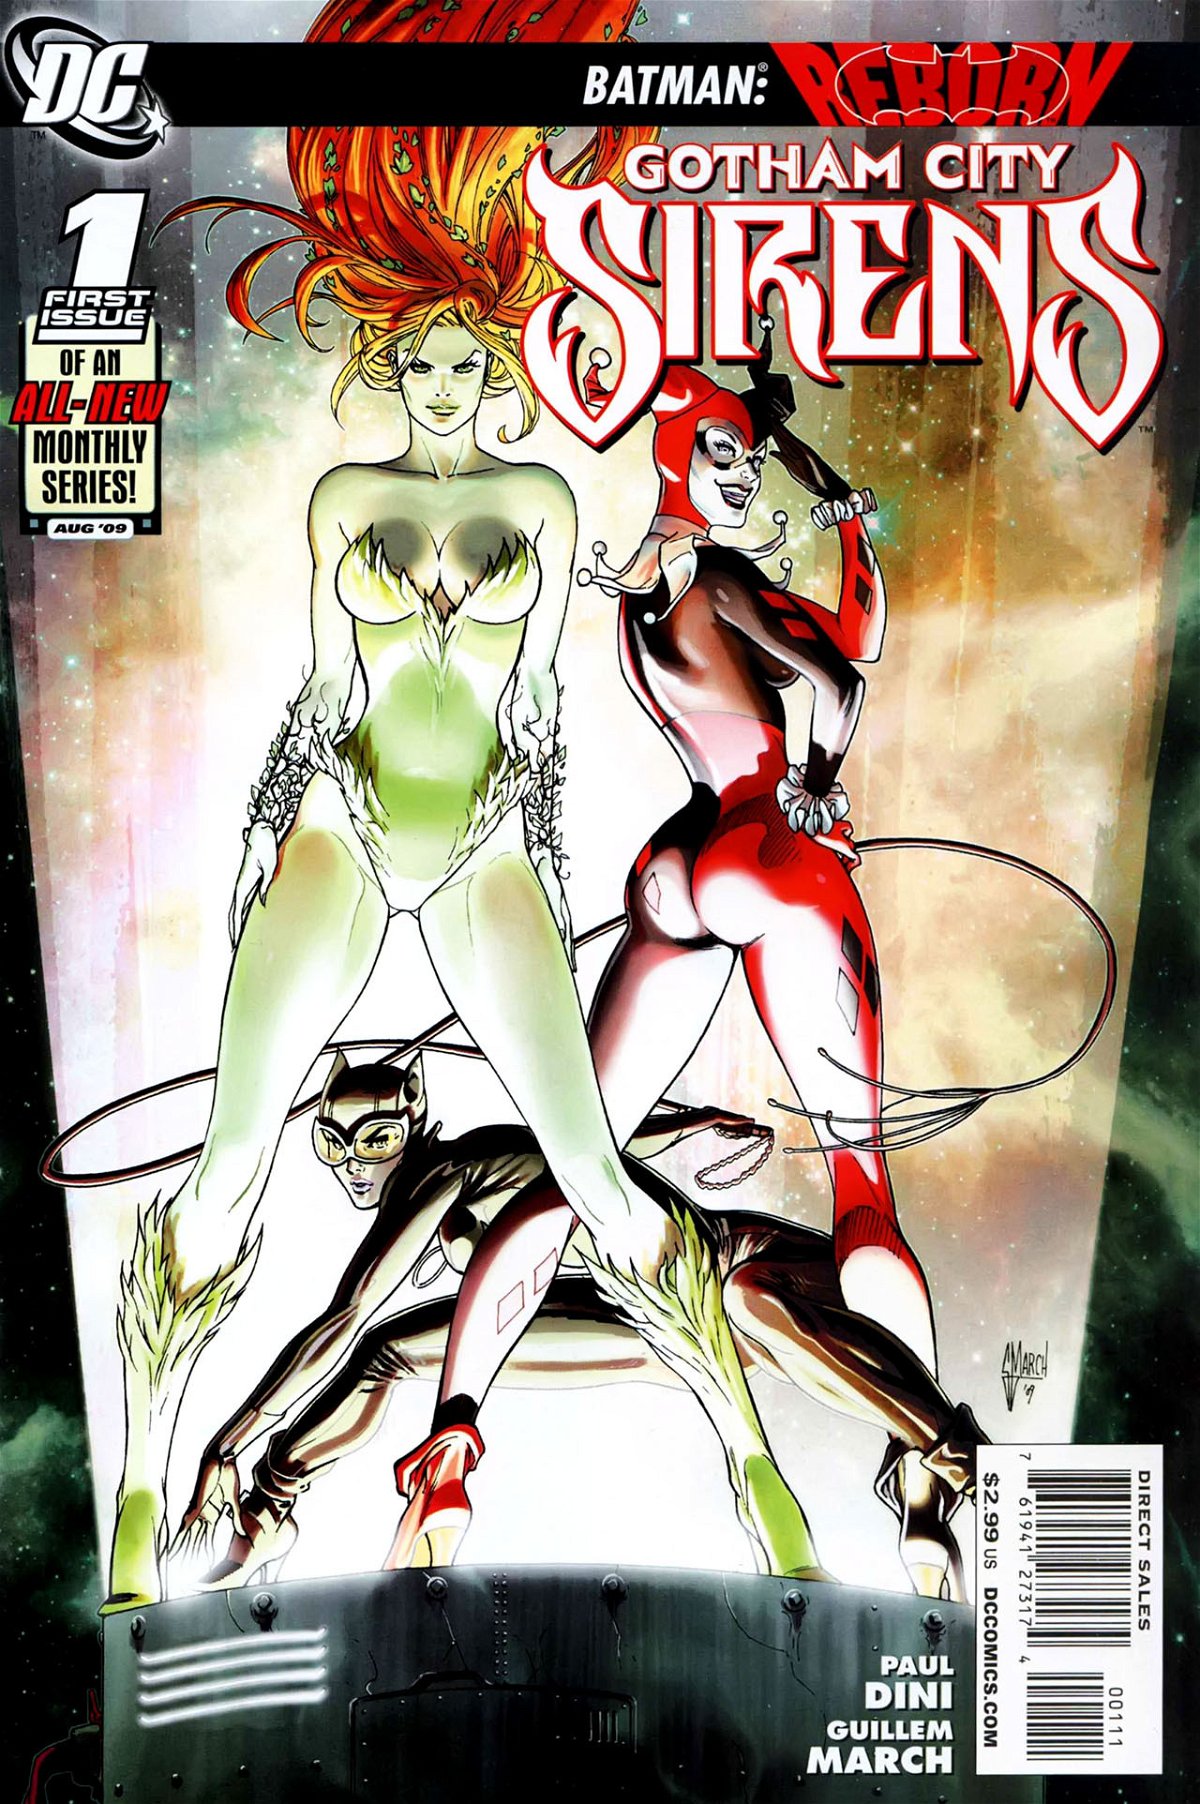 Gotham City Sirens la copertina del fumetto da cui sarà trasposto l'omonimo film